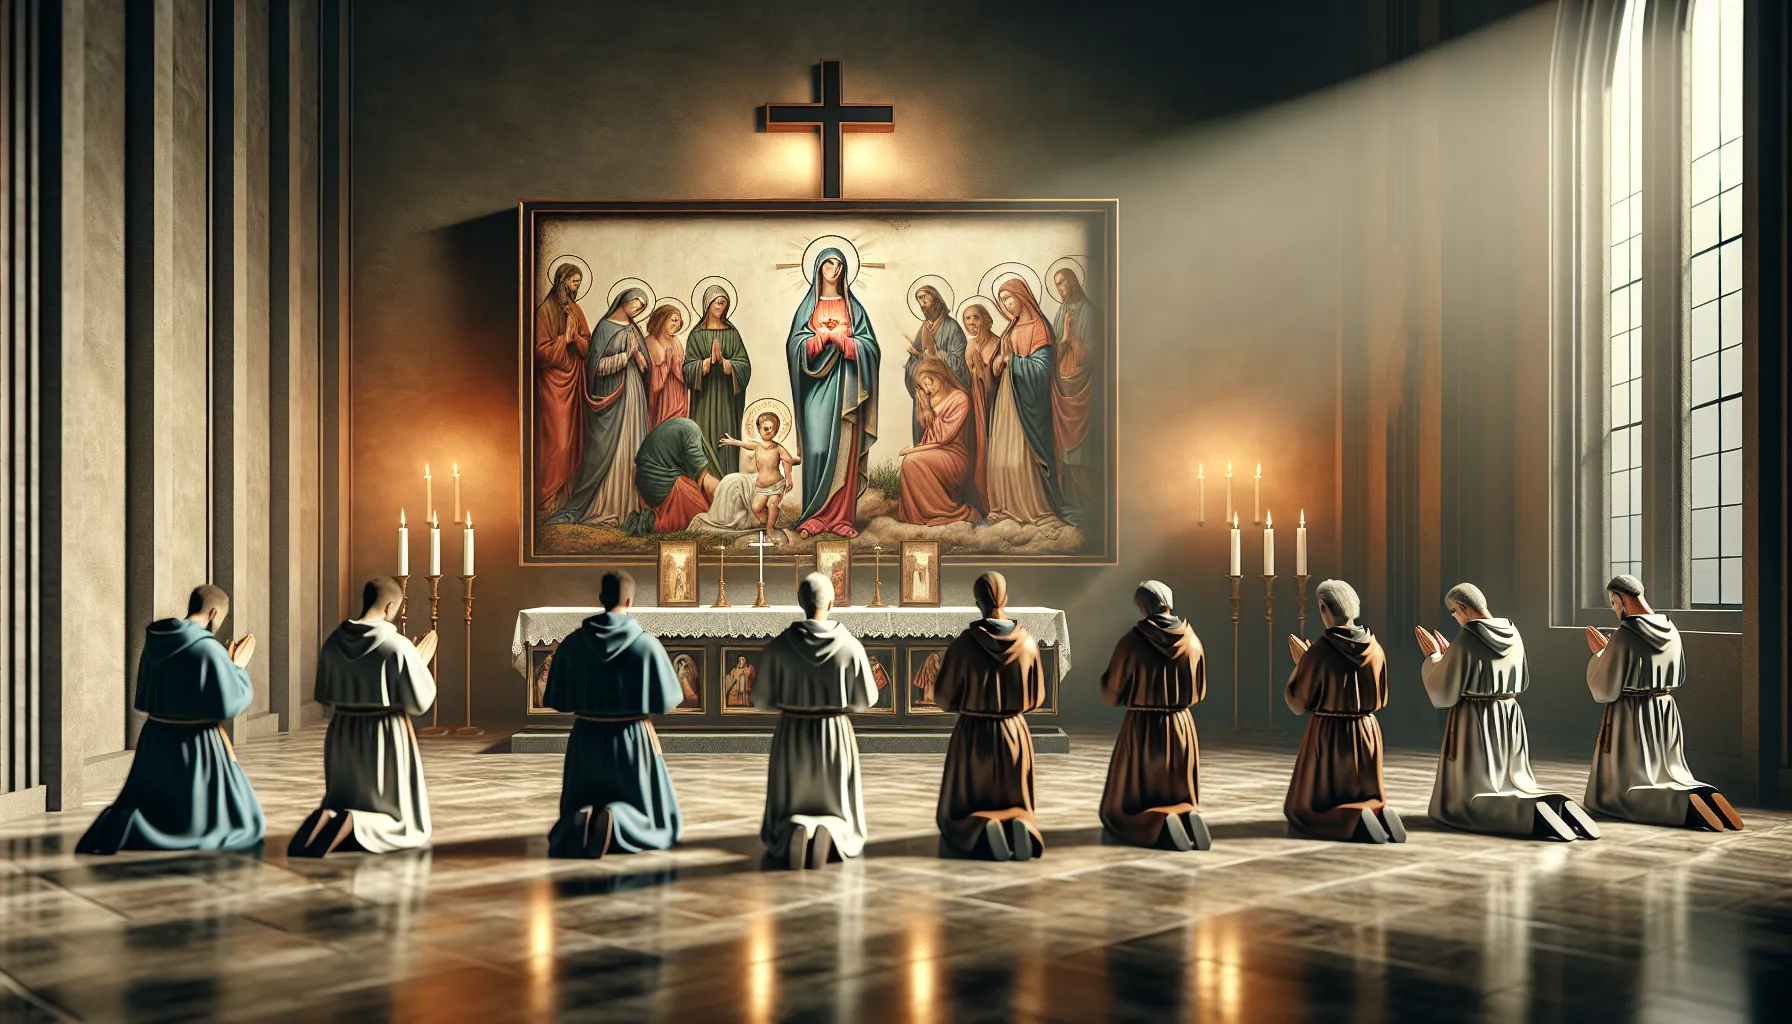 Imagen representativa de la importancia de la adoración a los santos y a María según la Biblia.